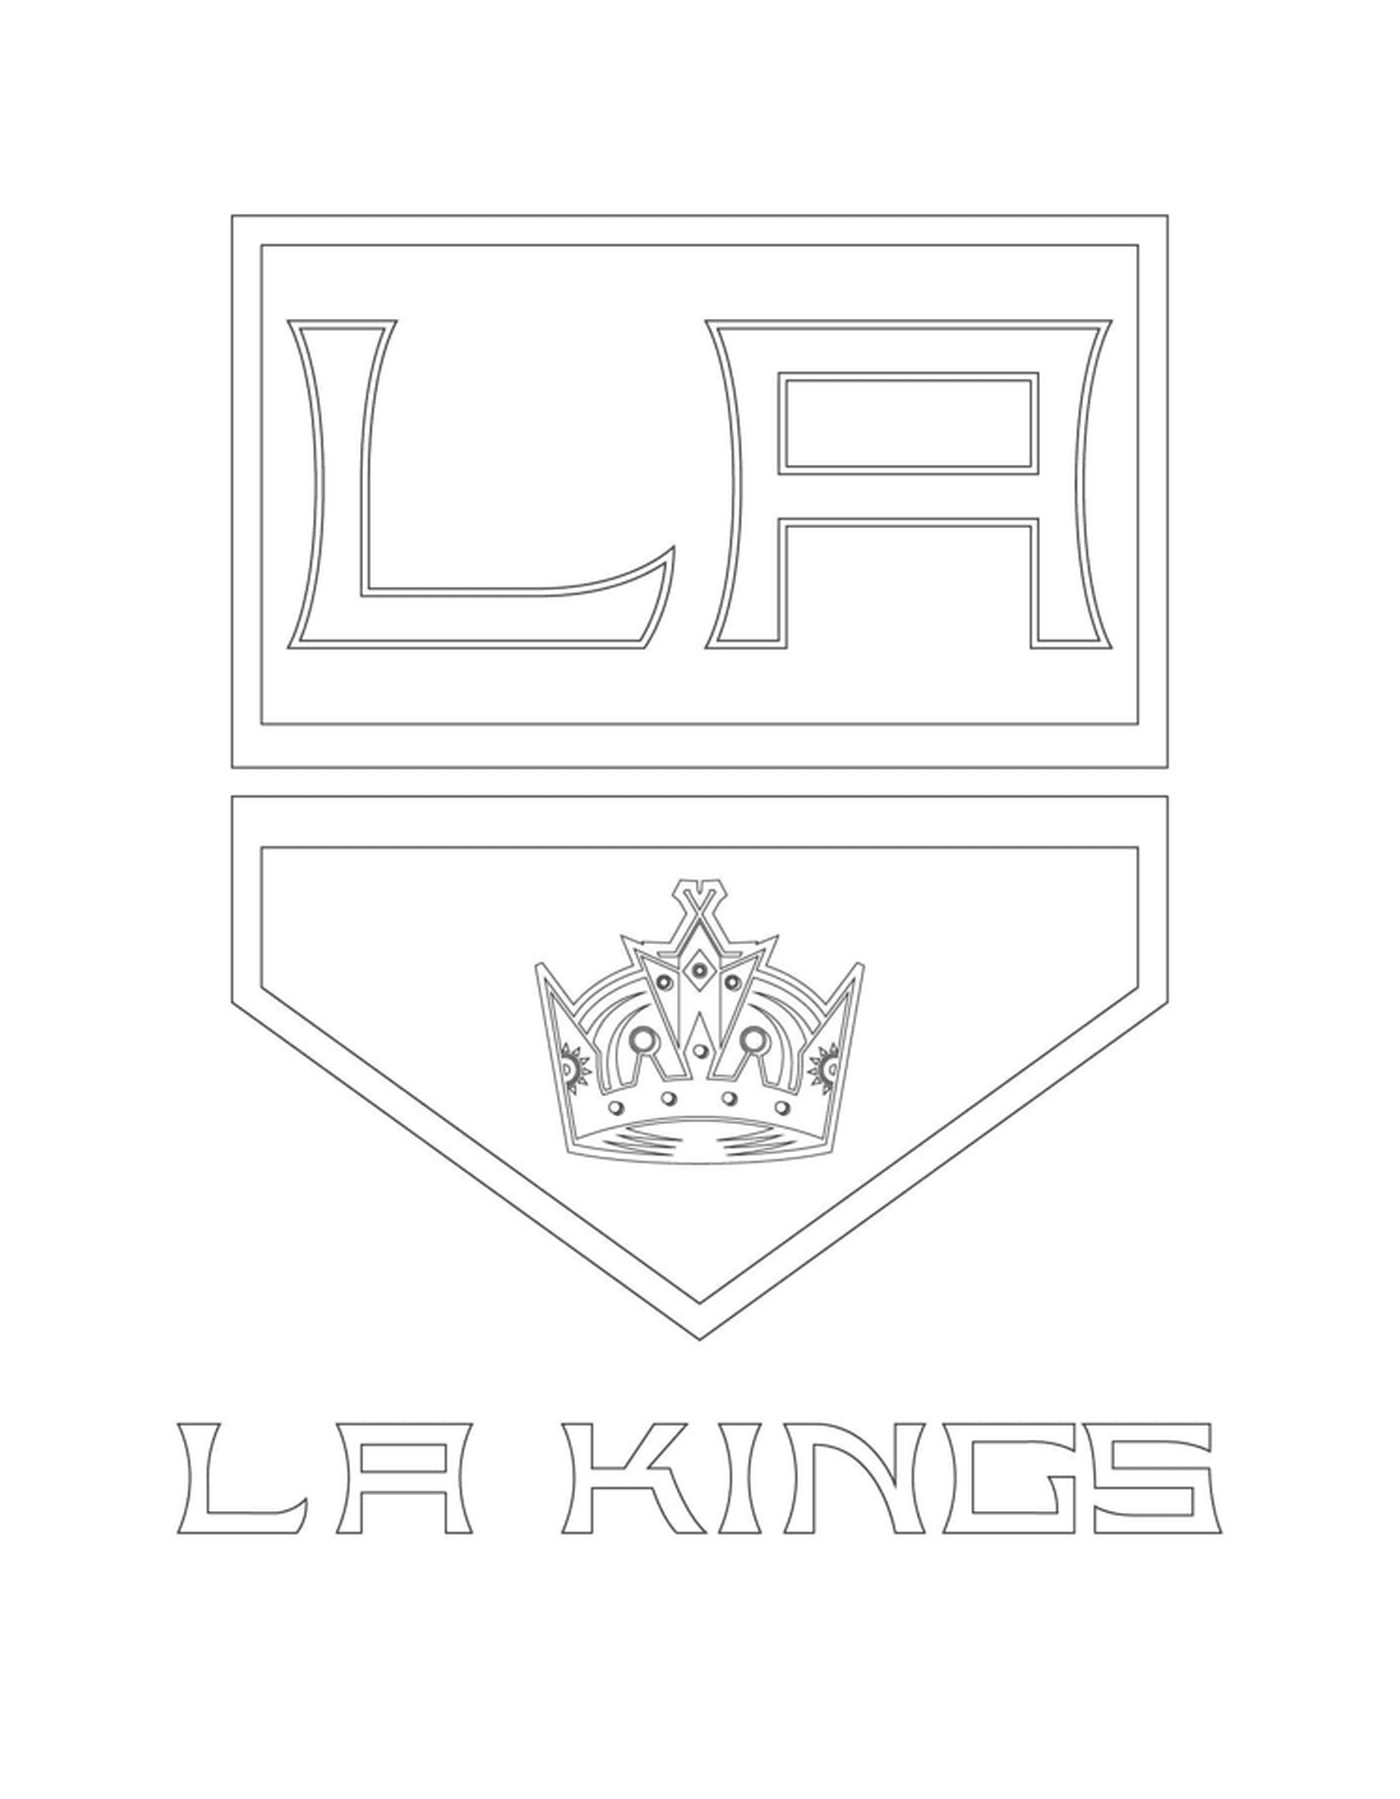  洛杉矶国王的徽章 